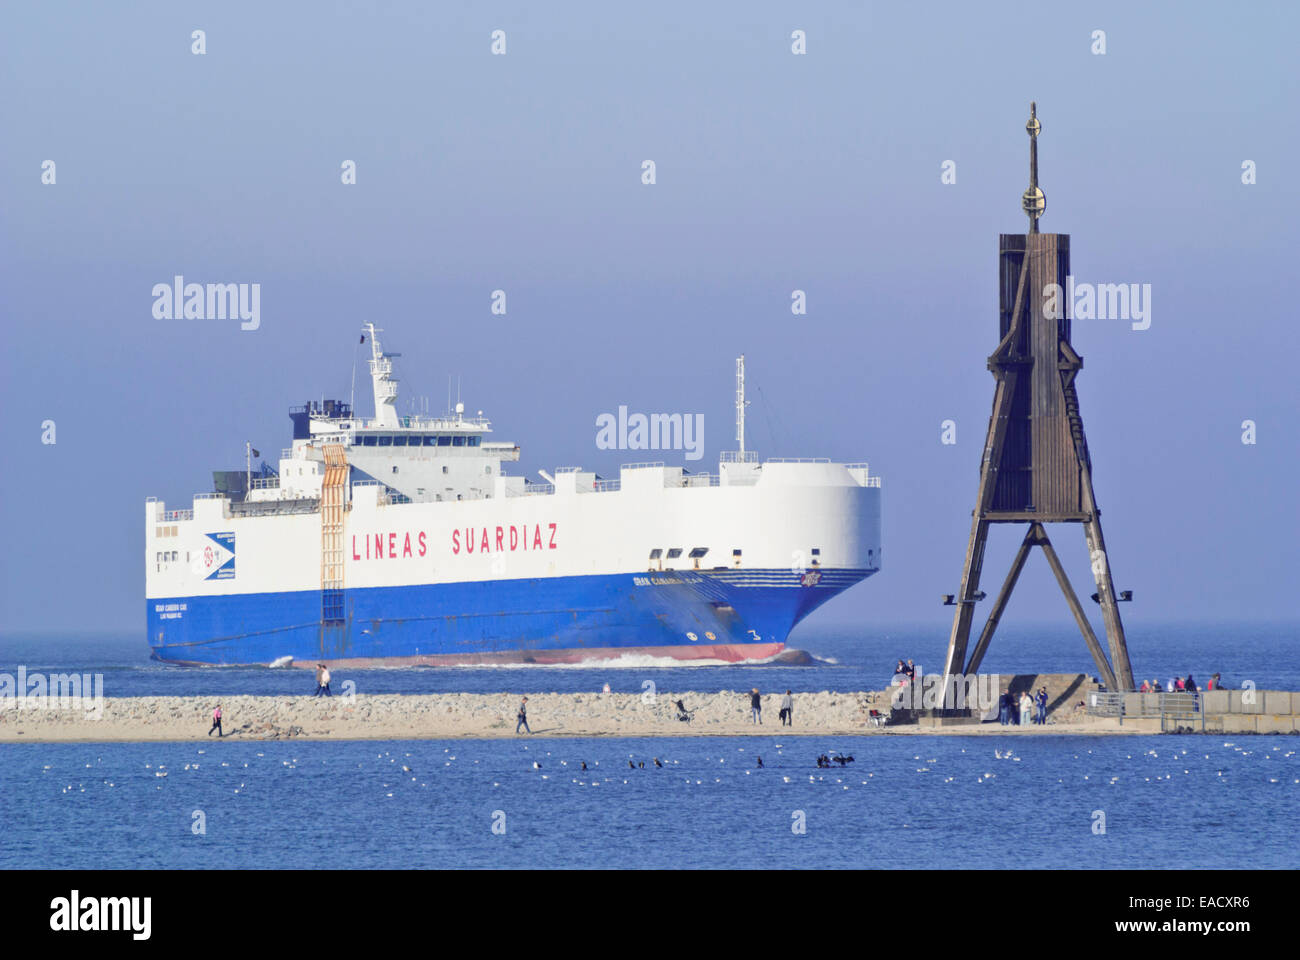 Kugelbake y barco de transporte en la desembocadura del río Elba, Cuxhaven, Alemania Foto de stock